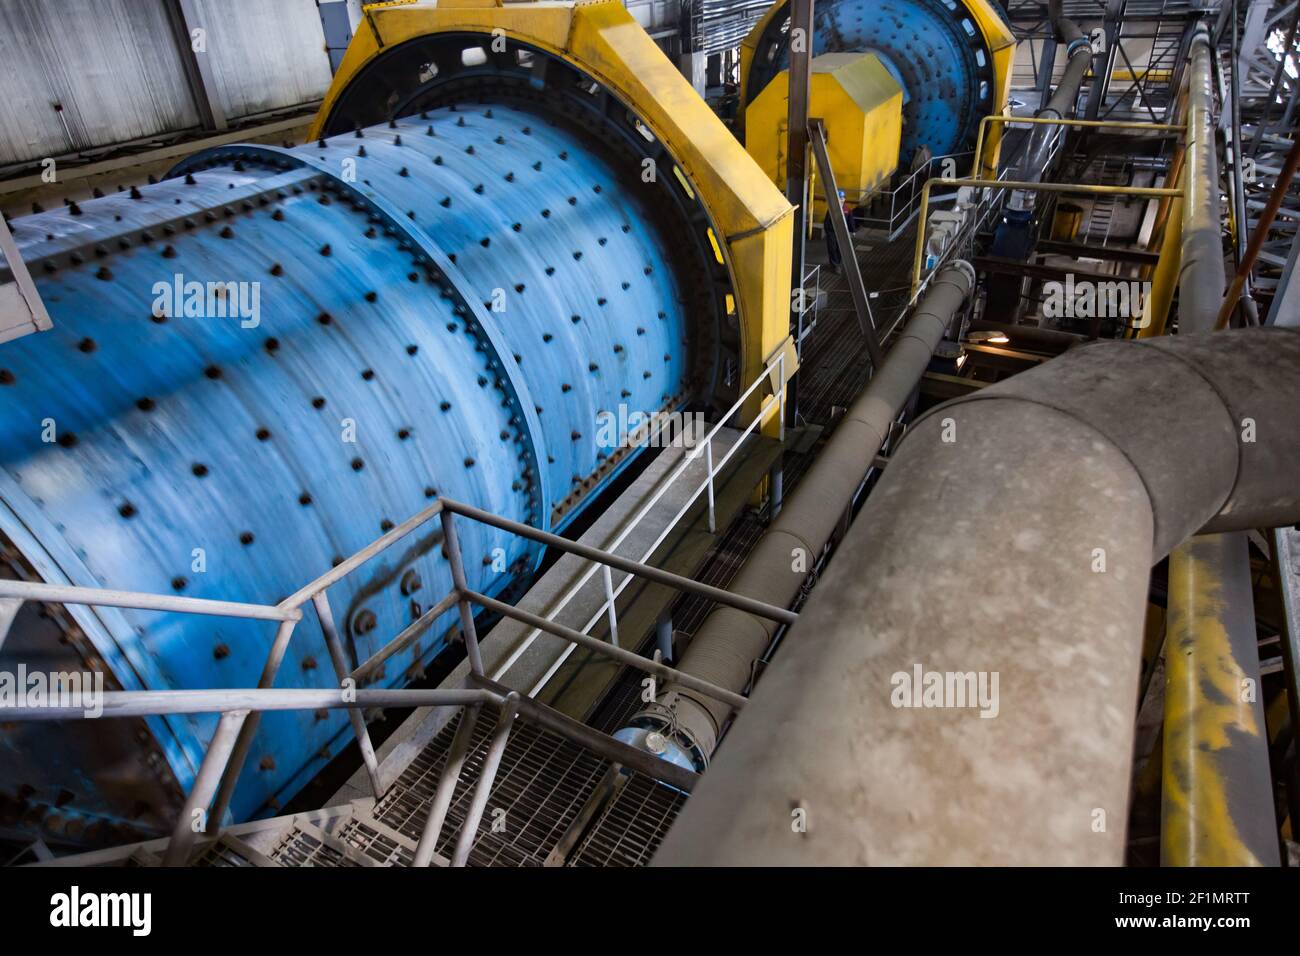 Khromtau/Kasachstan - Mai 06 2012: Kupfererzkonzentrationsanlage. Blau und gelb Fabrik Kugelmühle. Bewegung verschwommen Mühle blauen Körper. Stockfoto